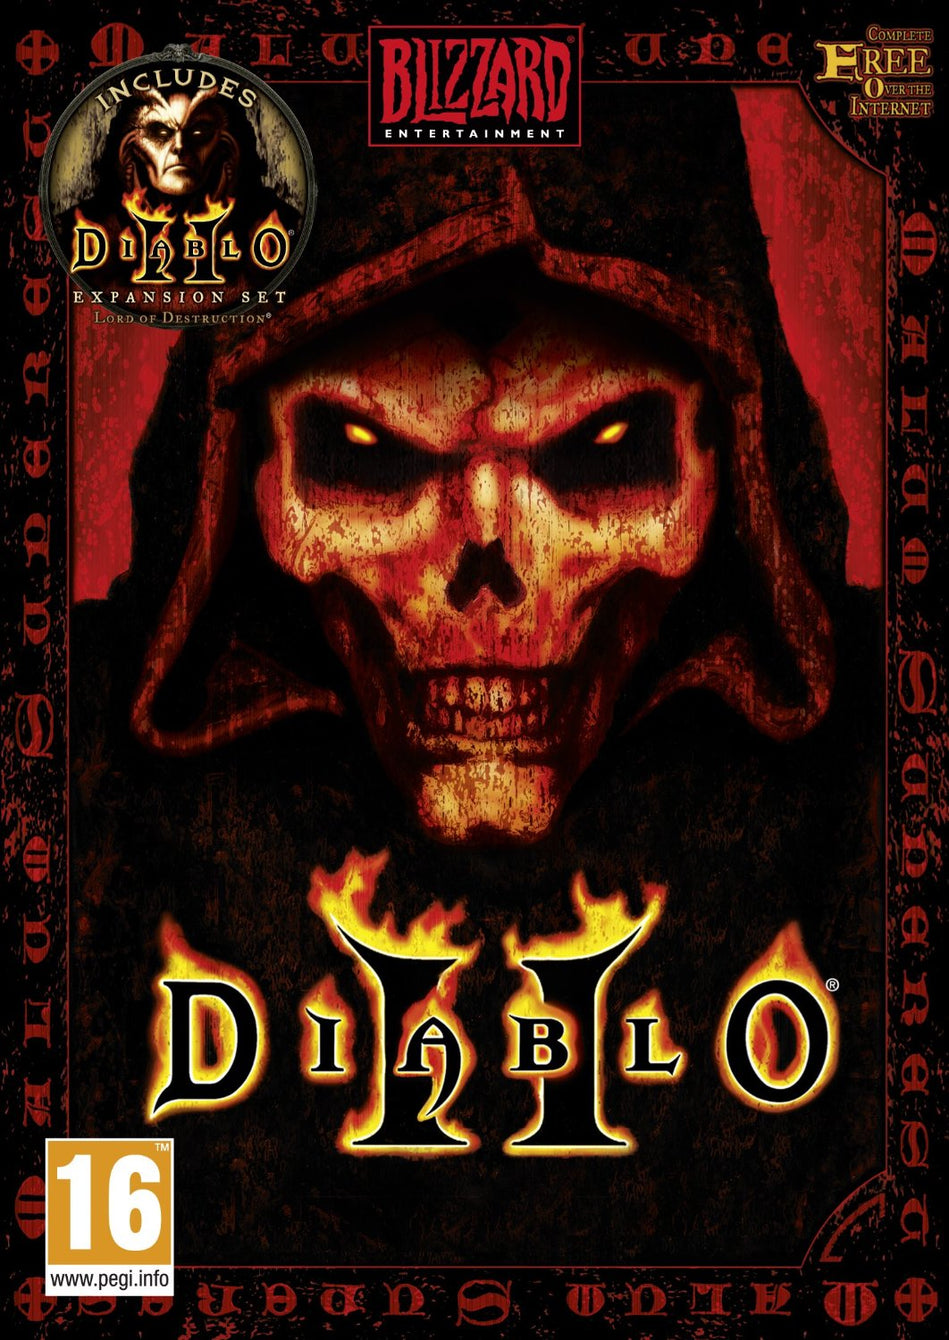 Diablo + Lord of Destruction Bundle (PC) - Battle.net Key - GLOBAL